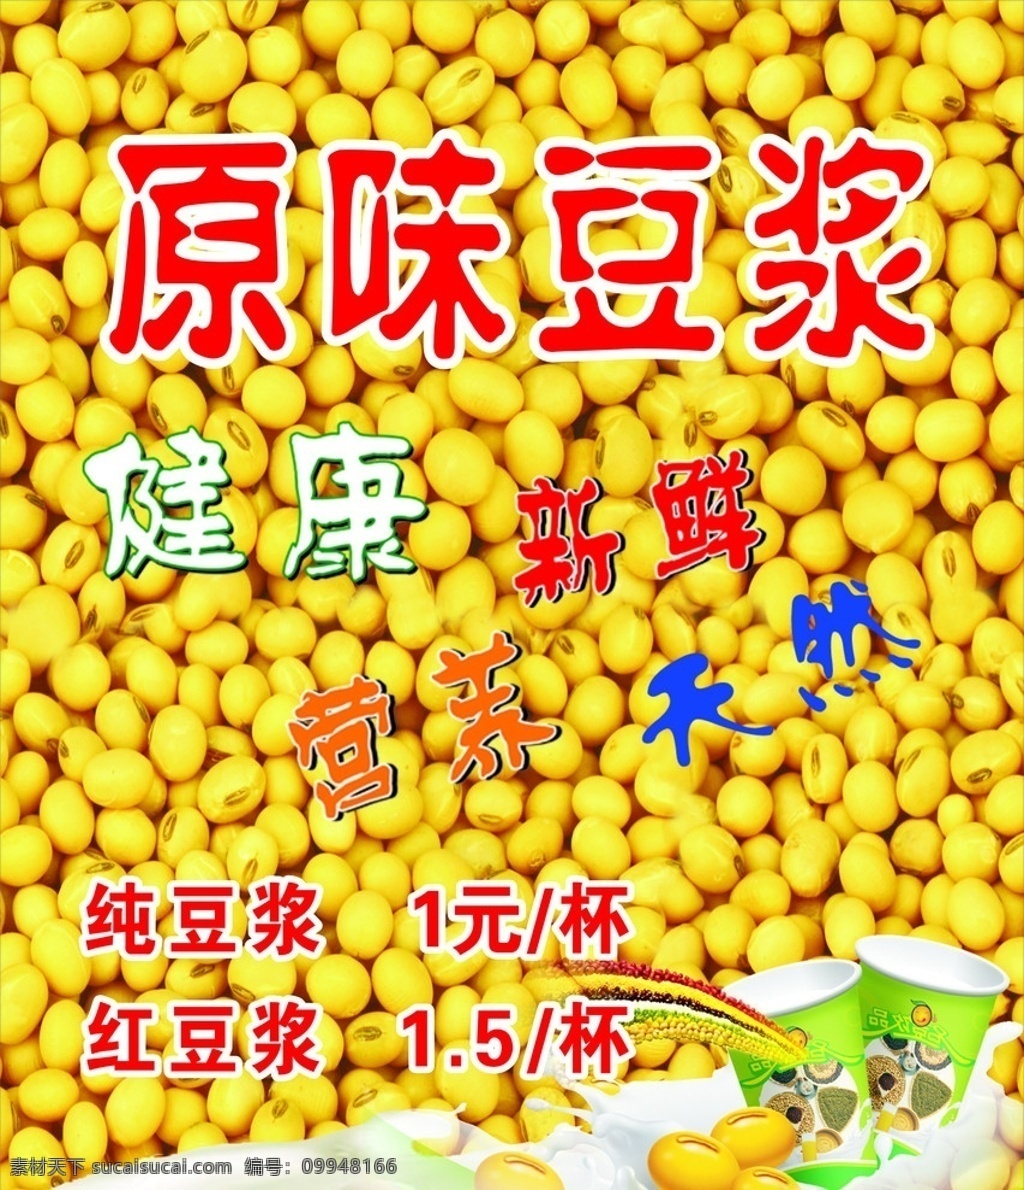 豆浆 原味豆浆广告 海报 健康 天然 促销 黄色豆浆颗粒 矢量